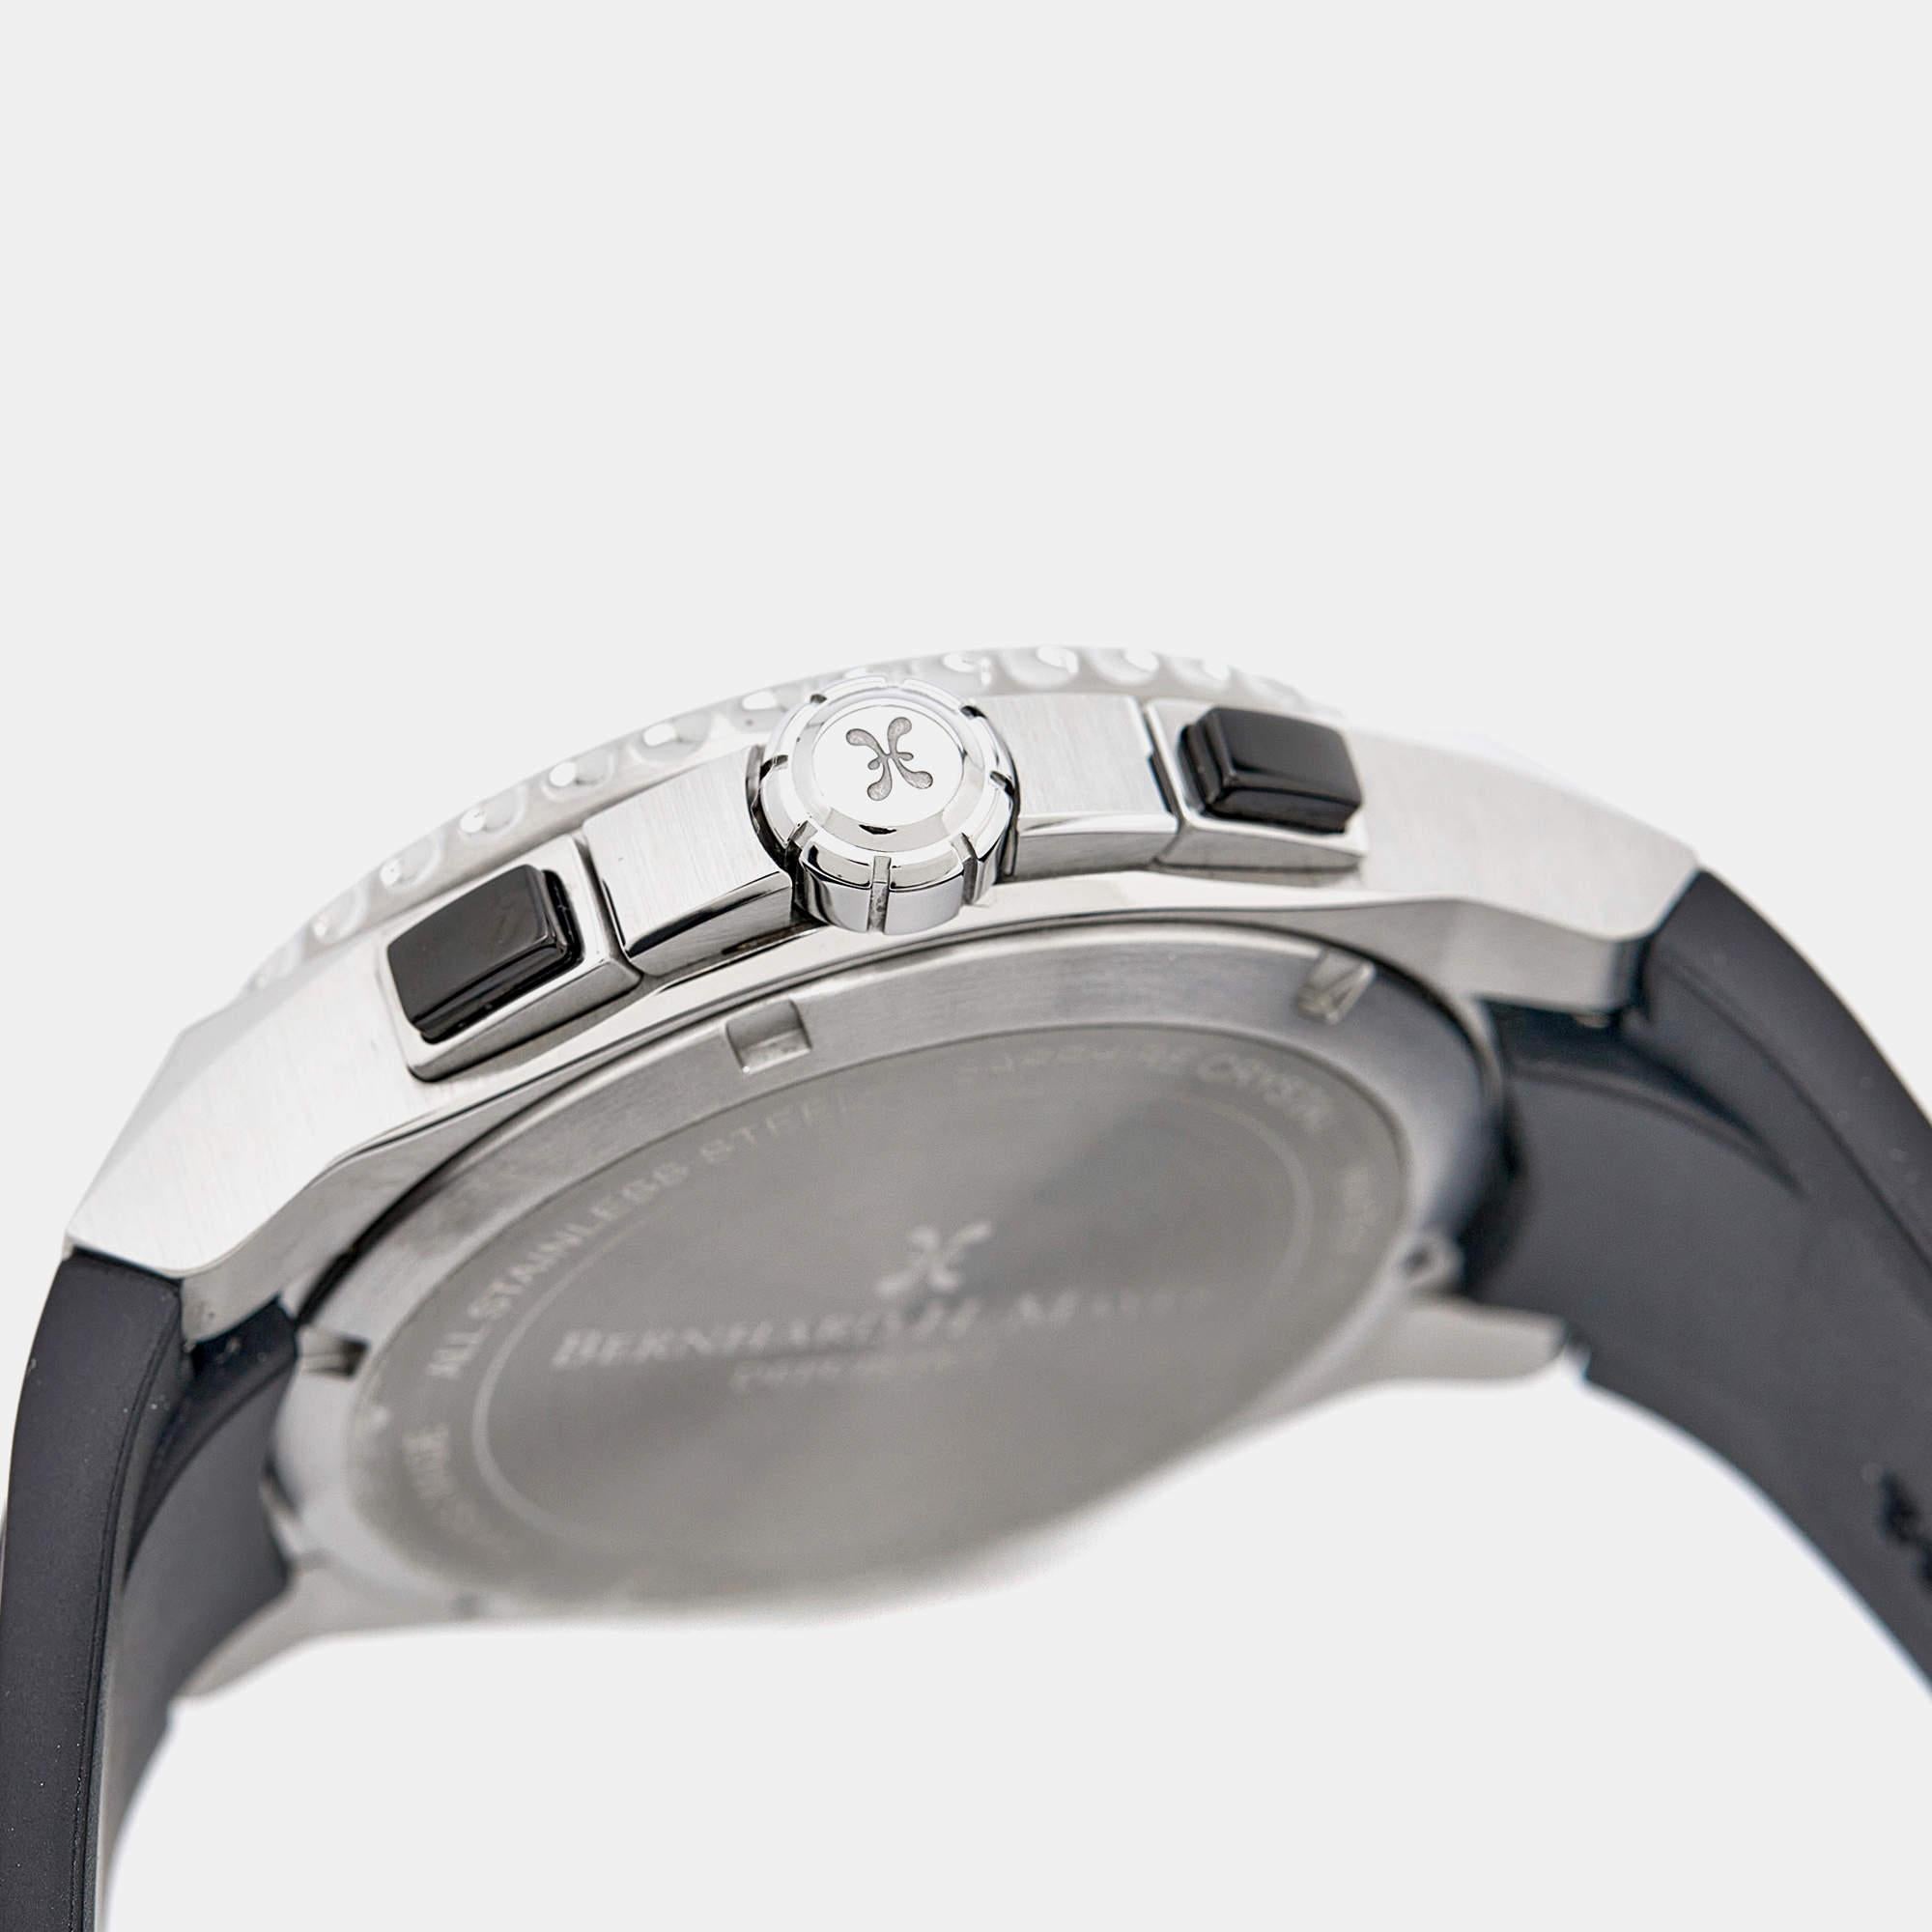 Dieser authentische Luxus-Zeitmesser hilft Ihnen, jeden Moment zu genießen! Diese Bernhard H.Mayer-Uhr ist ein funktionelles Accessoire, das aus hochwertigen Materialien gefertigt wurde und Ihnen einen luxuriösen Stil verleiht und gleichzeitig die